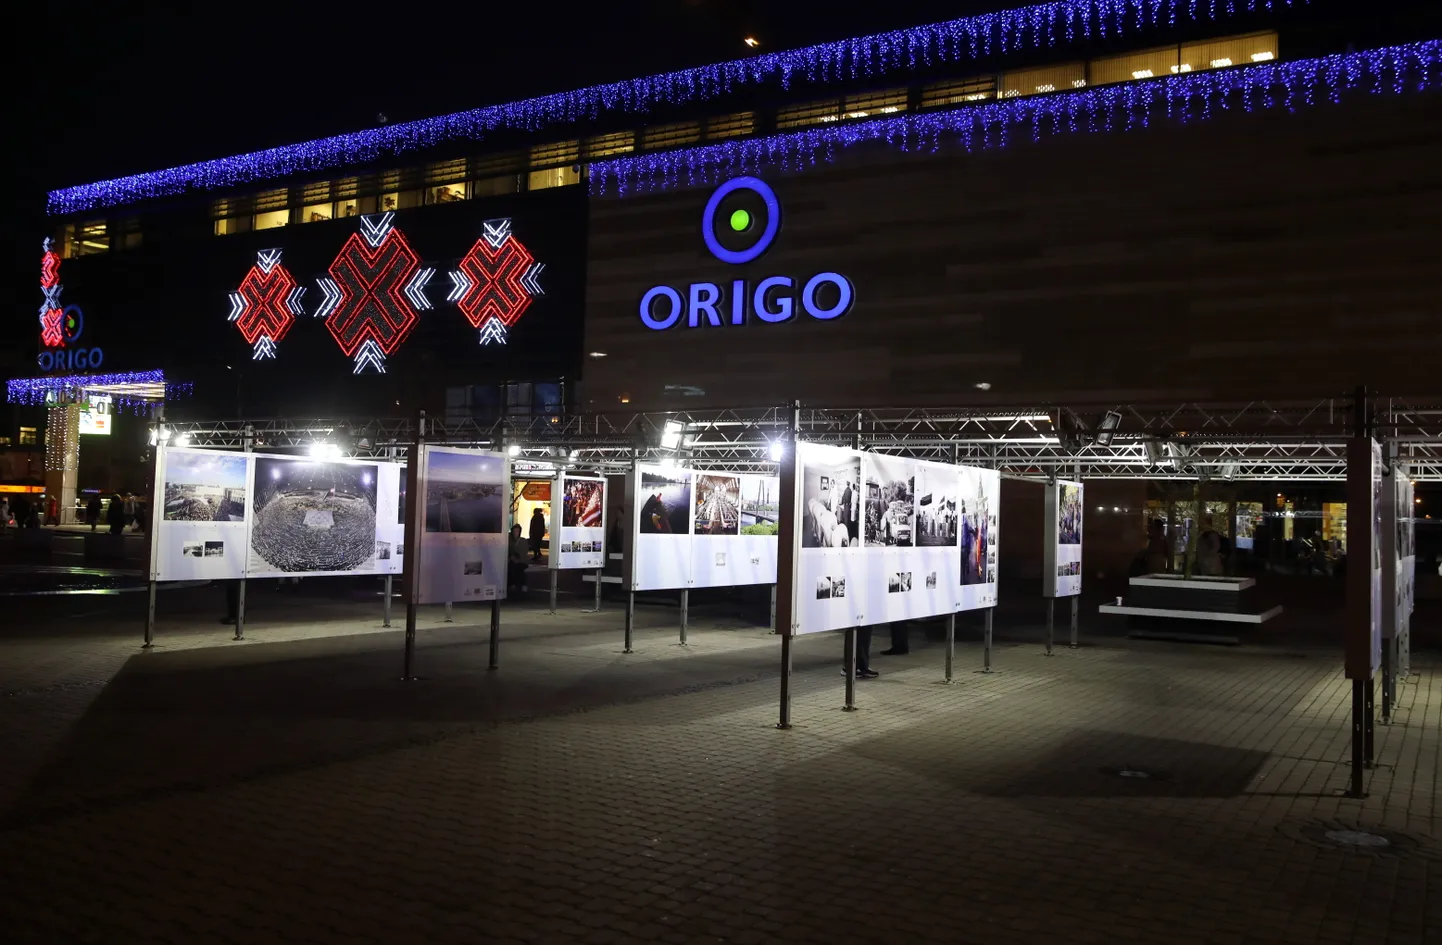 Lielformāta brīvdabas foto izstāde "Rīga 100 gados" laukumā pie tirdzniecības centra "Origo".